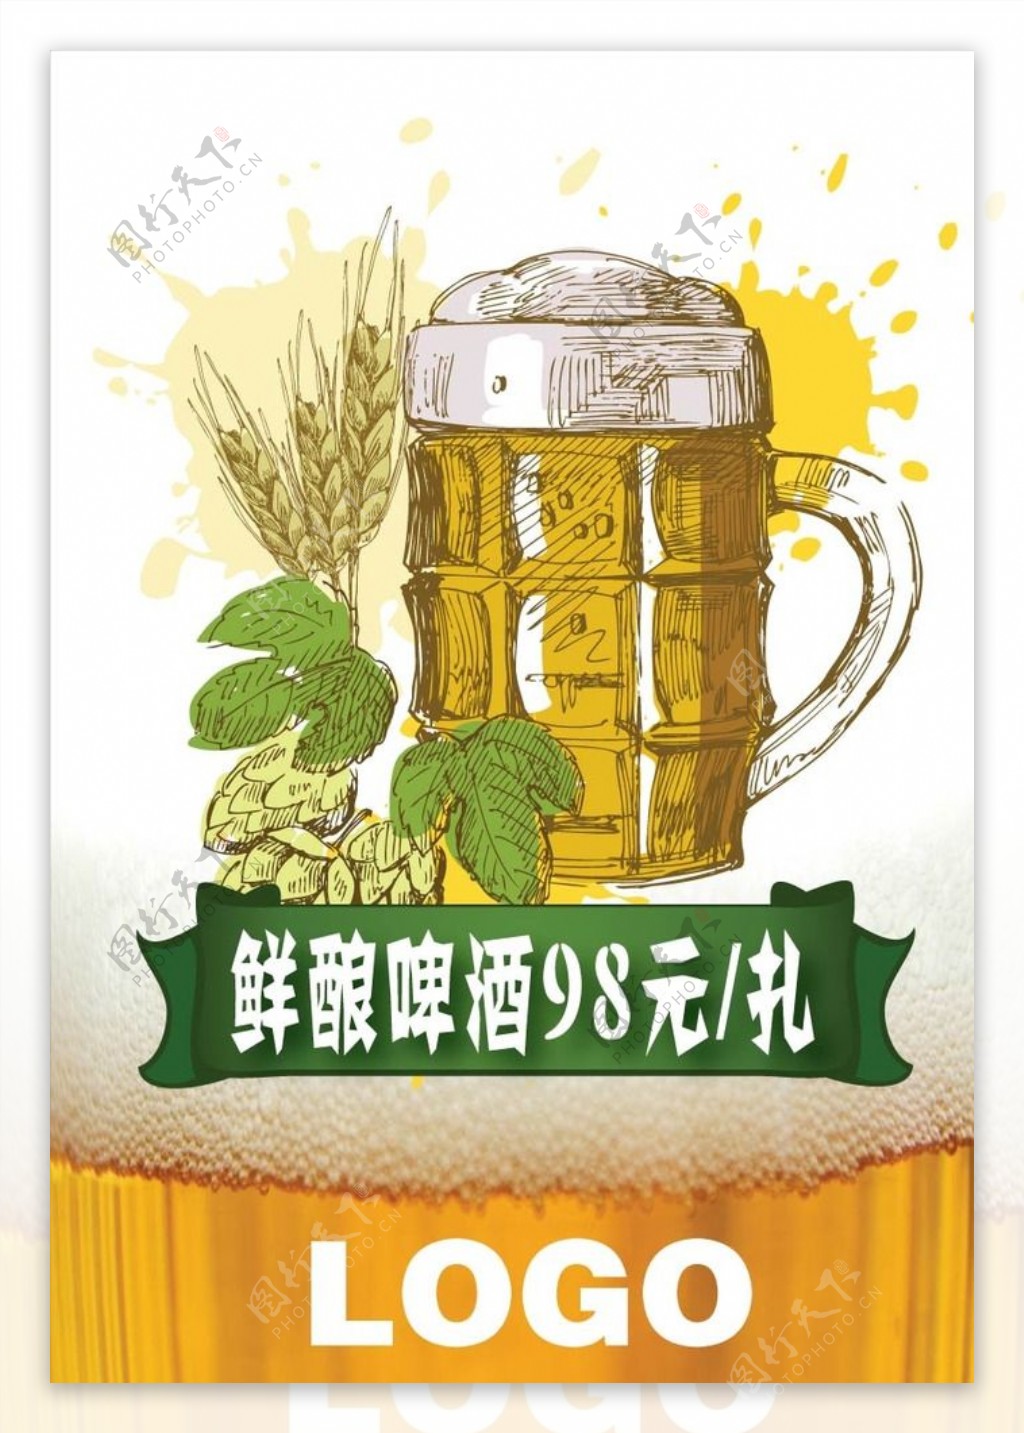 啤酒促销海报图片